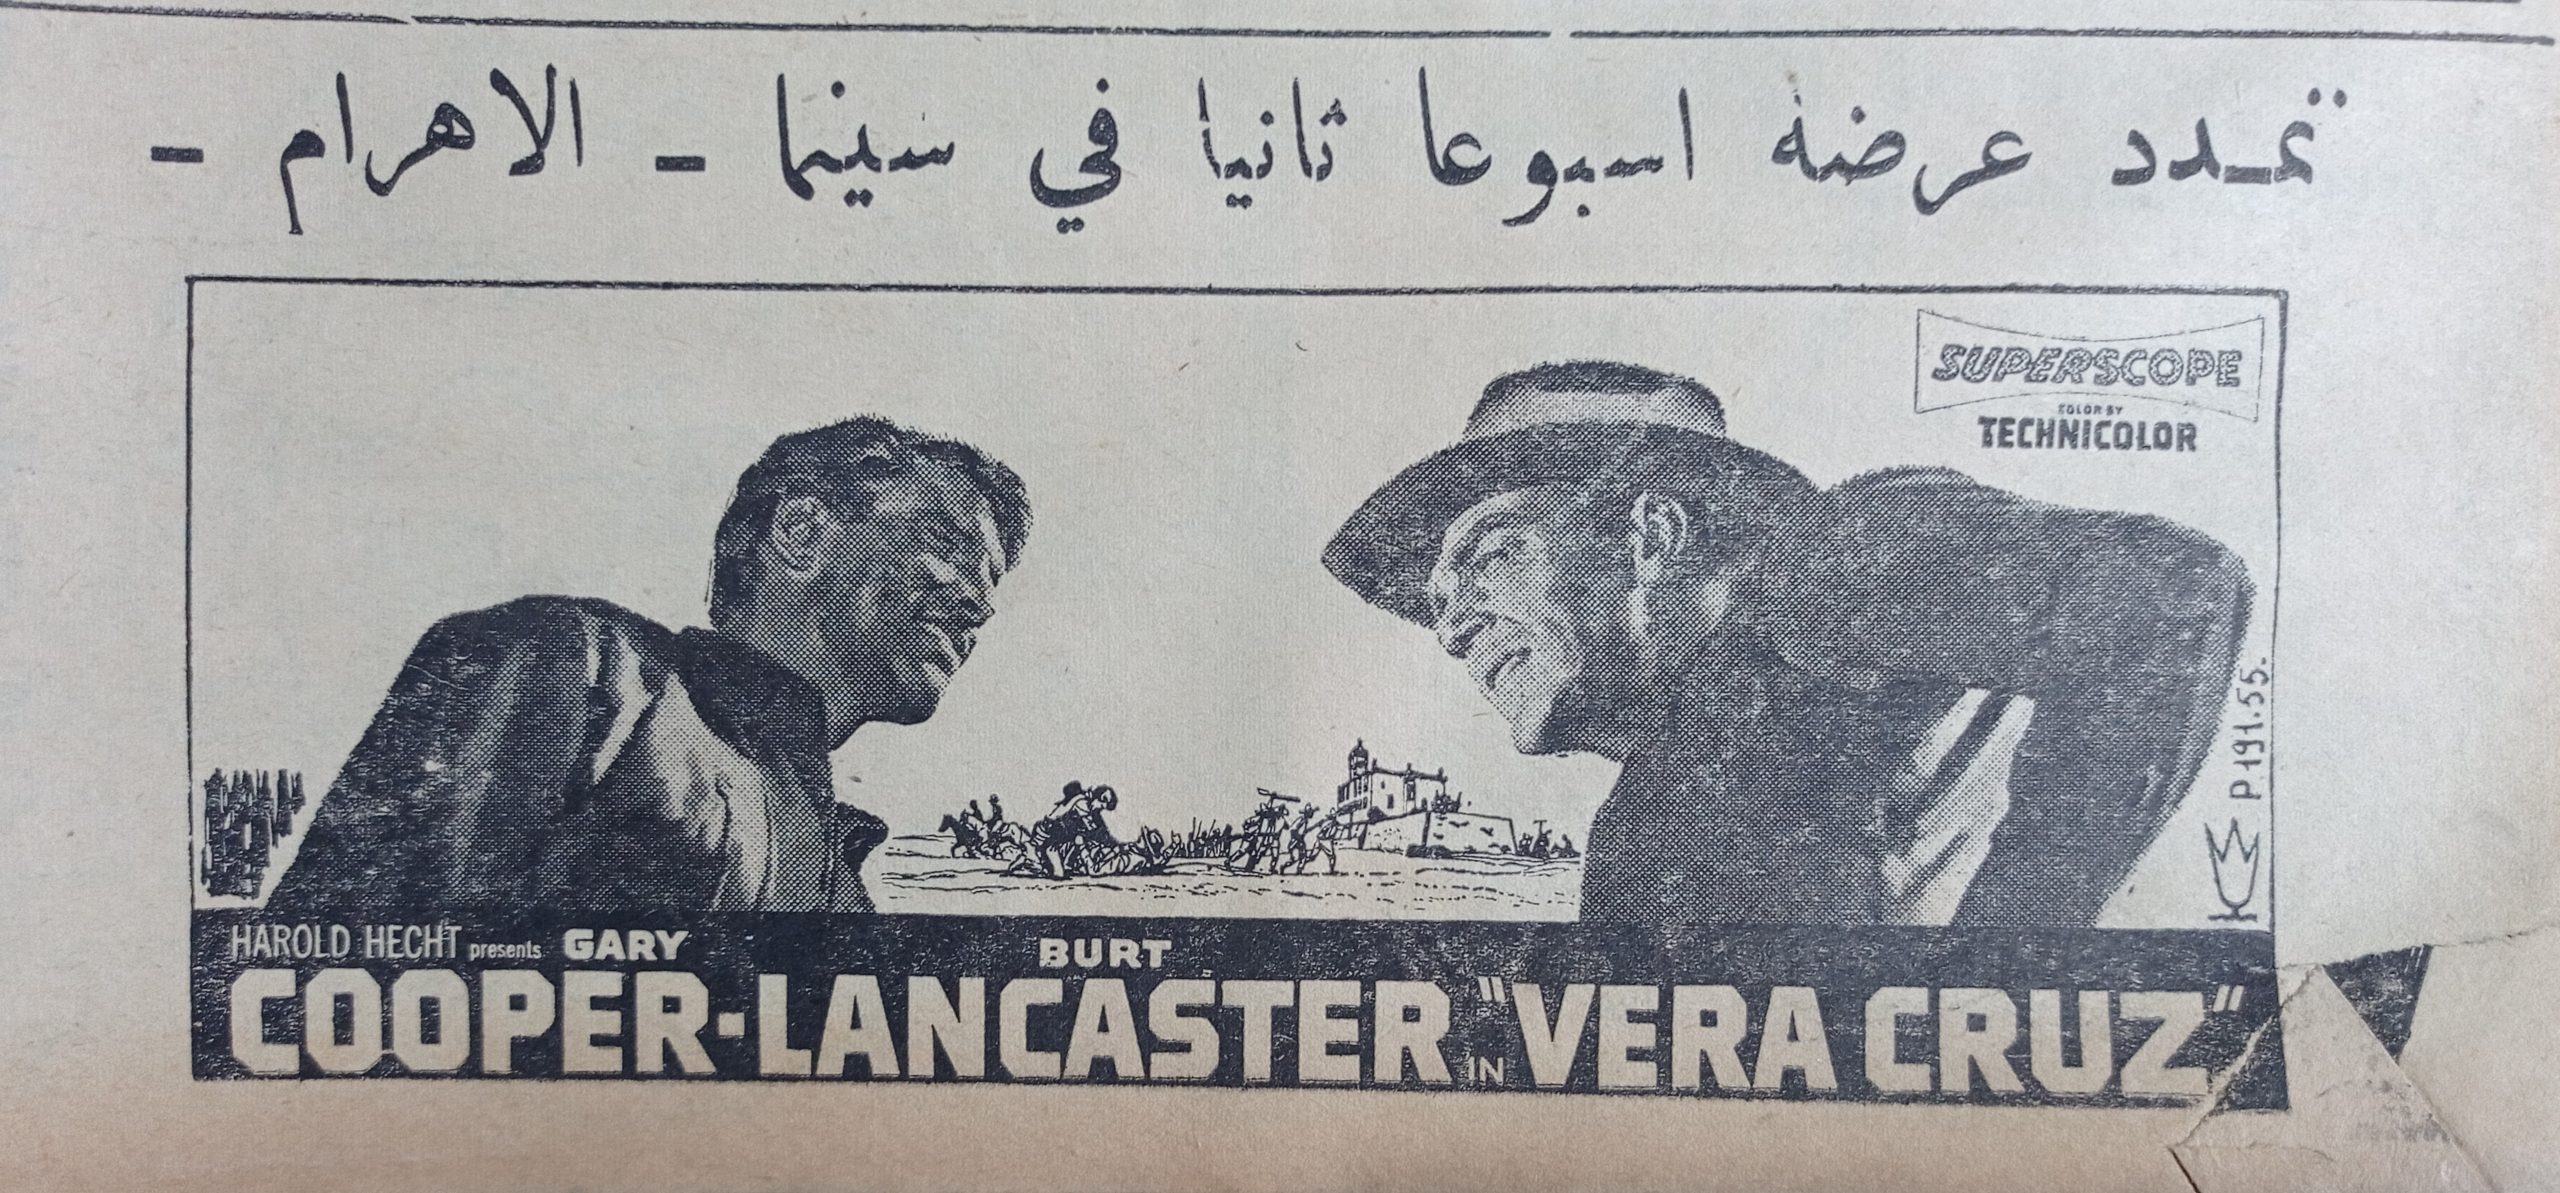 التاريخ السوري المعاصر - إعلان عن تمديد عرض فيلم veracruz في سينما الاهرام في حلب عام 1956